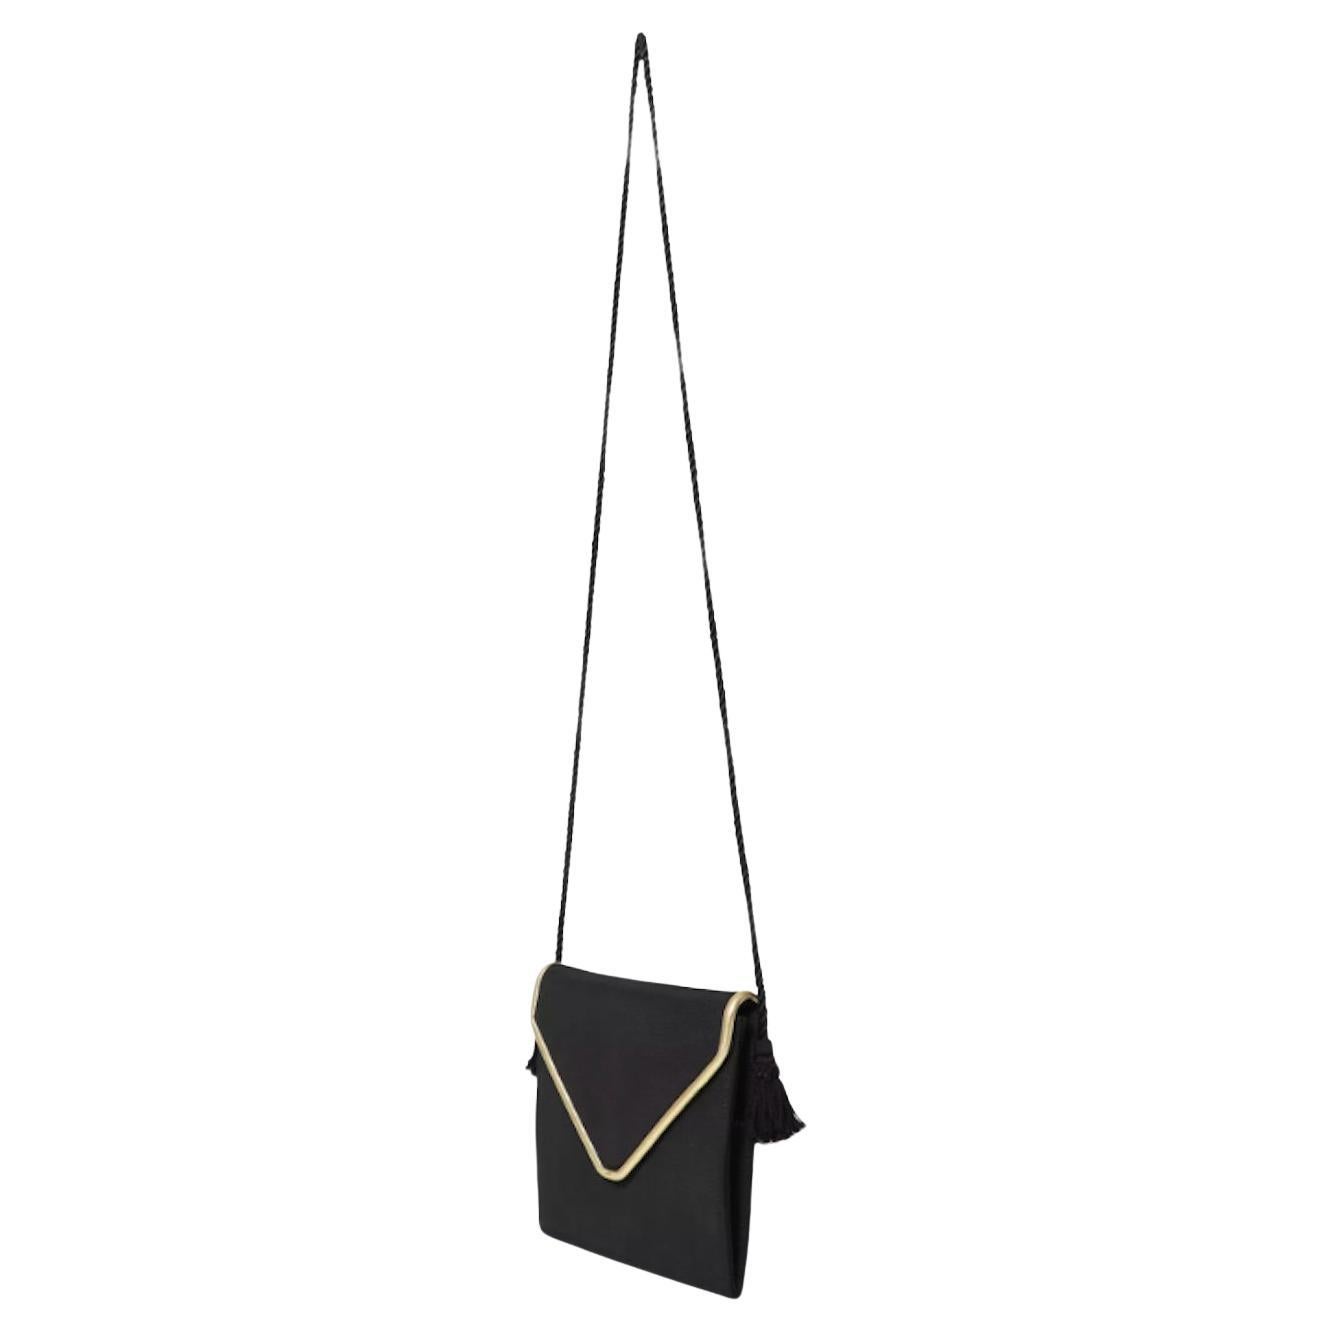  Van Cleef & Arpels Enveloppe Tassel Evening Bag For Sale